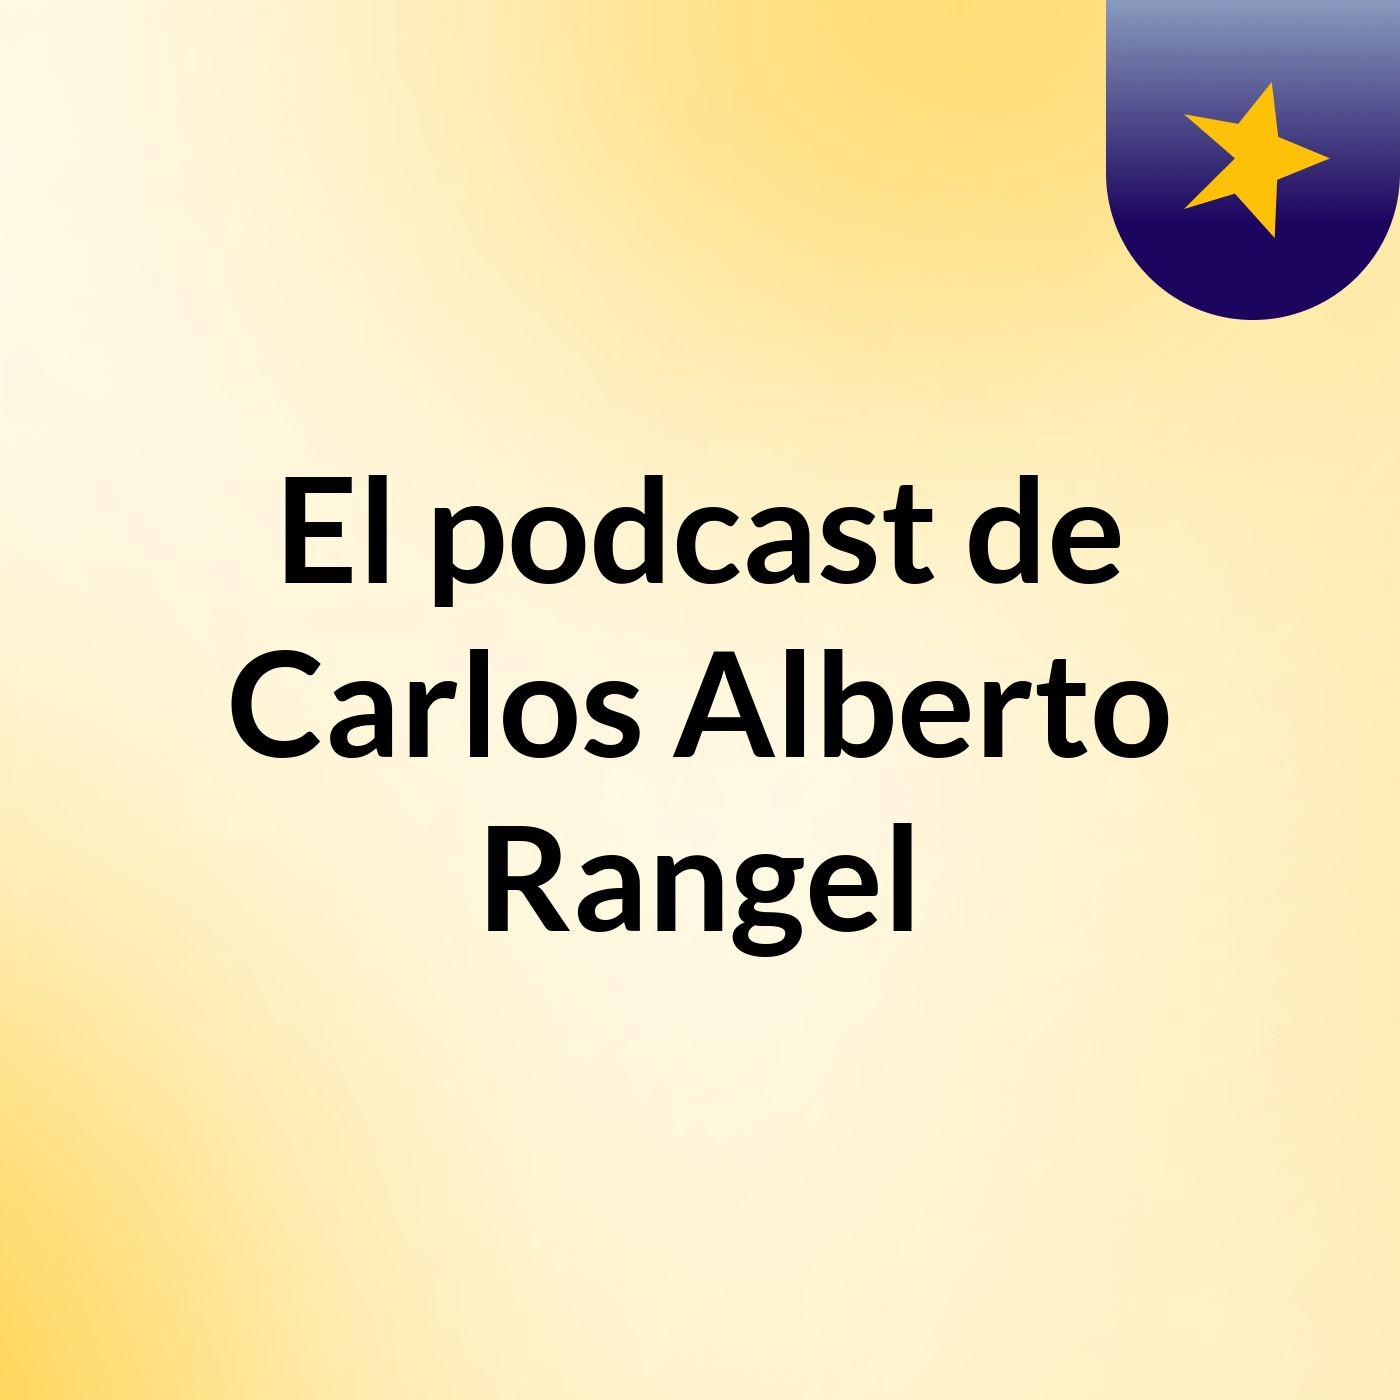 El podcast de Carlos Alberto Rangel